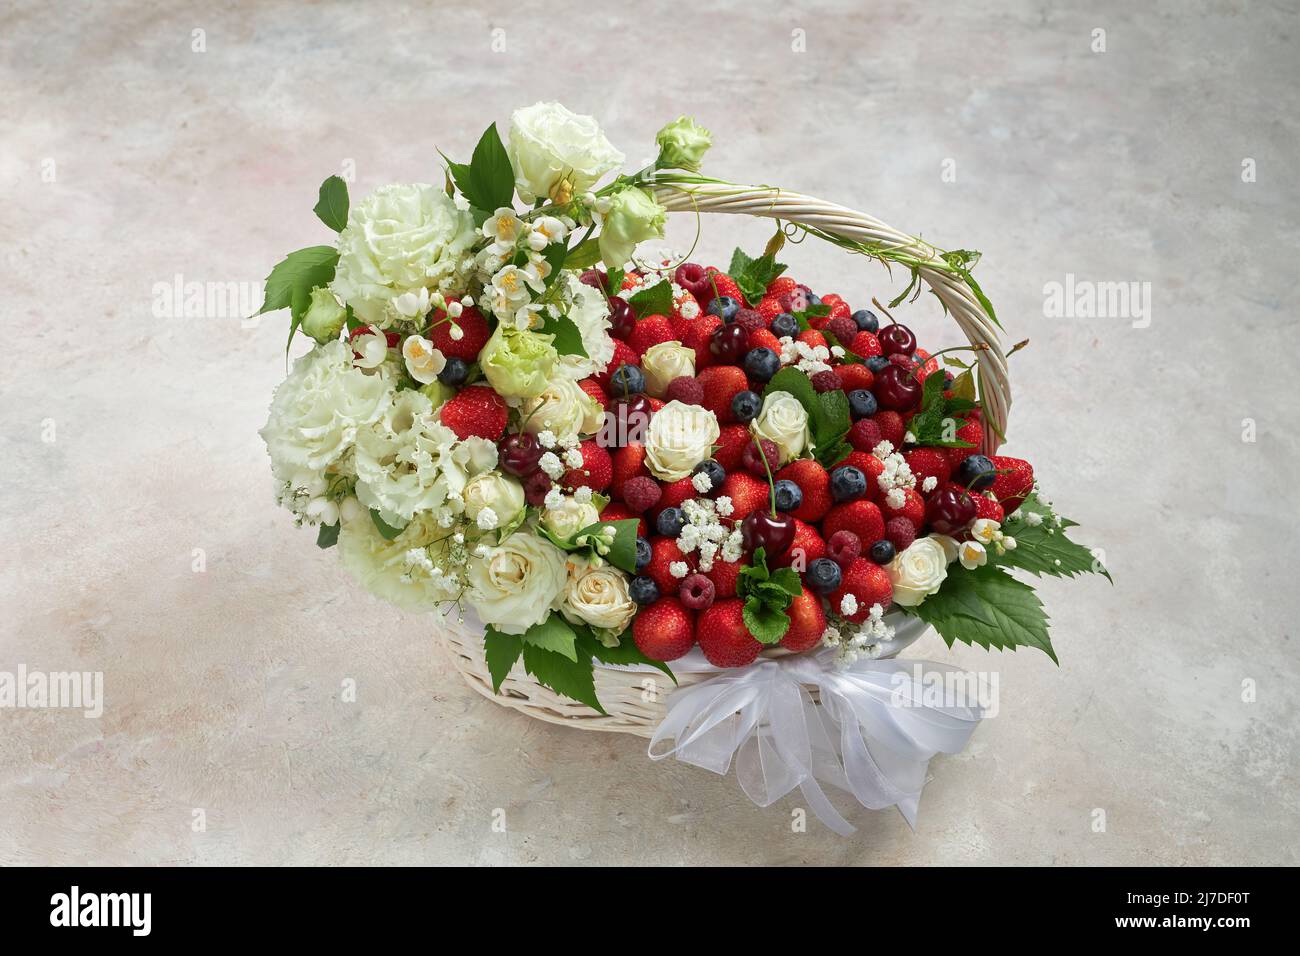 Cesta grande llena de fresas, frambuesas, arándanos, cerezas, decorada con flores blancas y hojas de menta Foto de stock